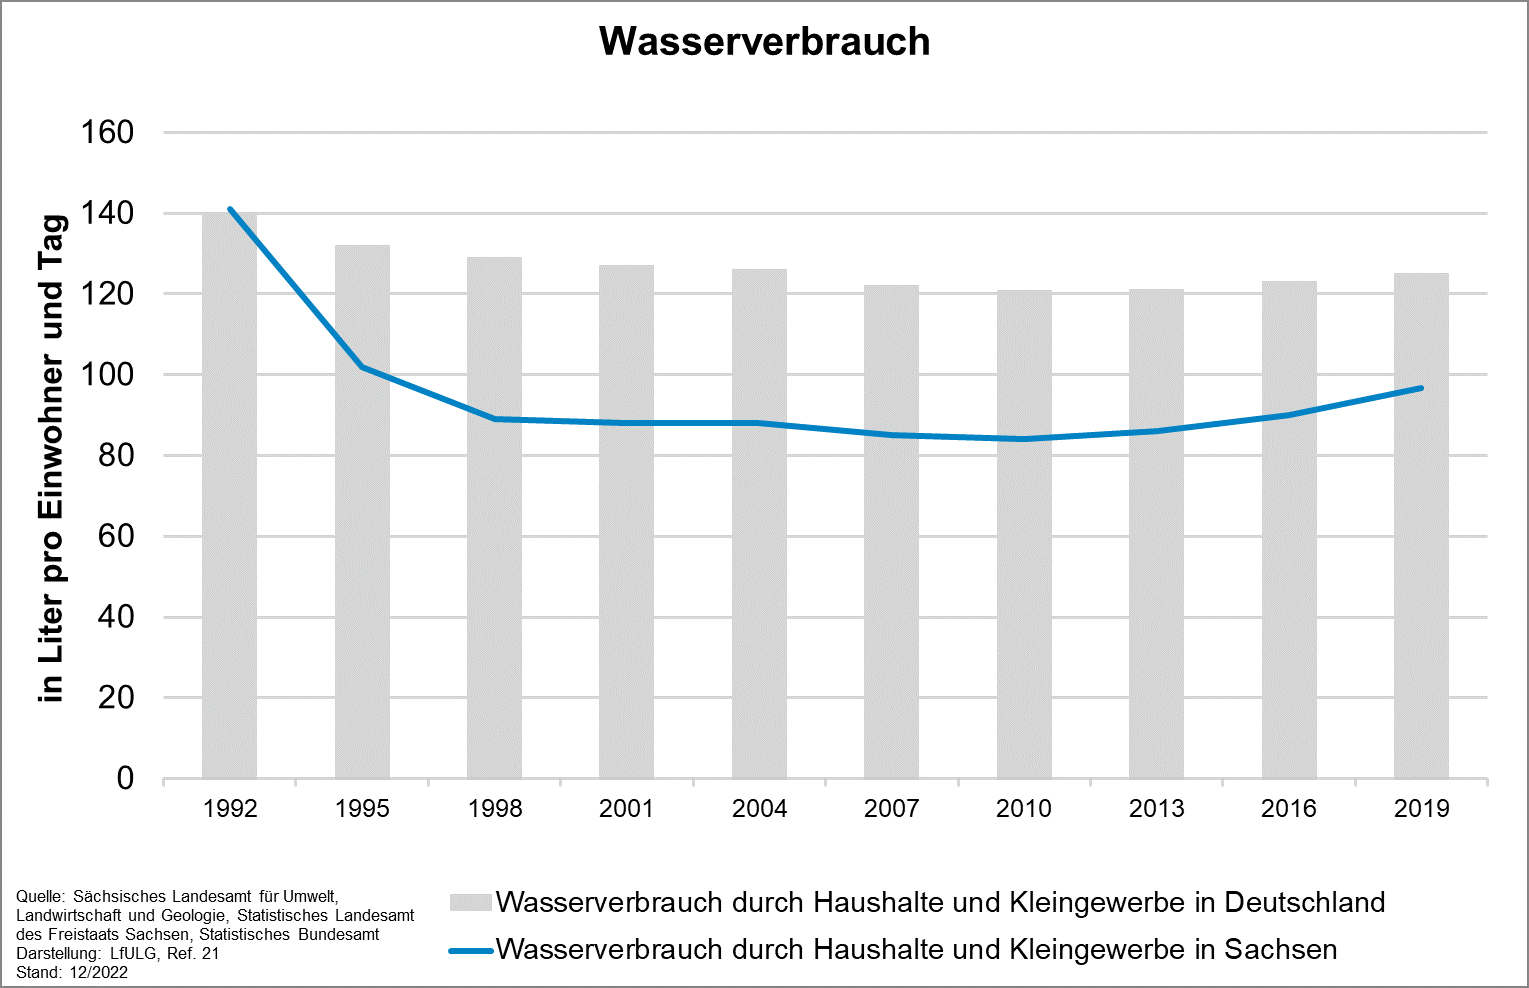 Die Grafik zeigt die Entwicklung des Indikators Wasserverbrauch von 1992 bis 2019. Der Wasserverbrauch durch Haushalte und Kleingewerbe in Sachsen sank von 141 Litern pro Einwohner und Jahr auf 89 Liter im Jahr 1998.